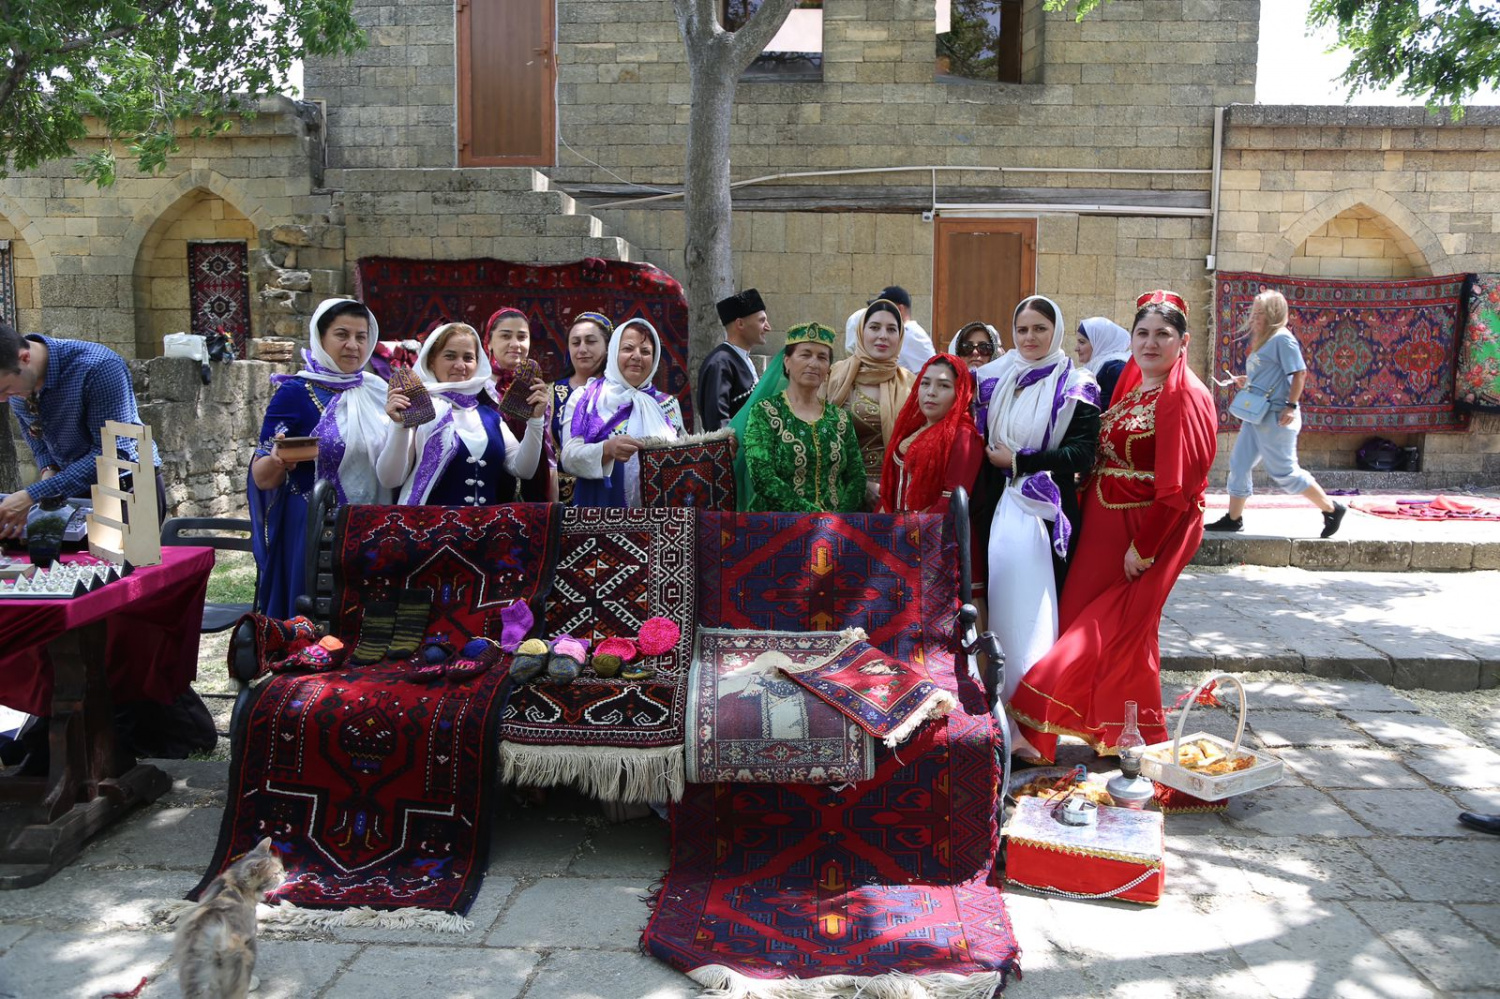 В Дагестане стартовал Фестиваль-форум культуры и традиций народов Юга России